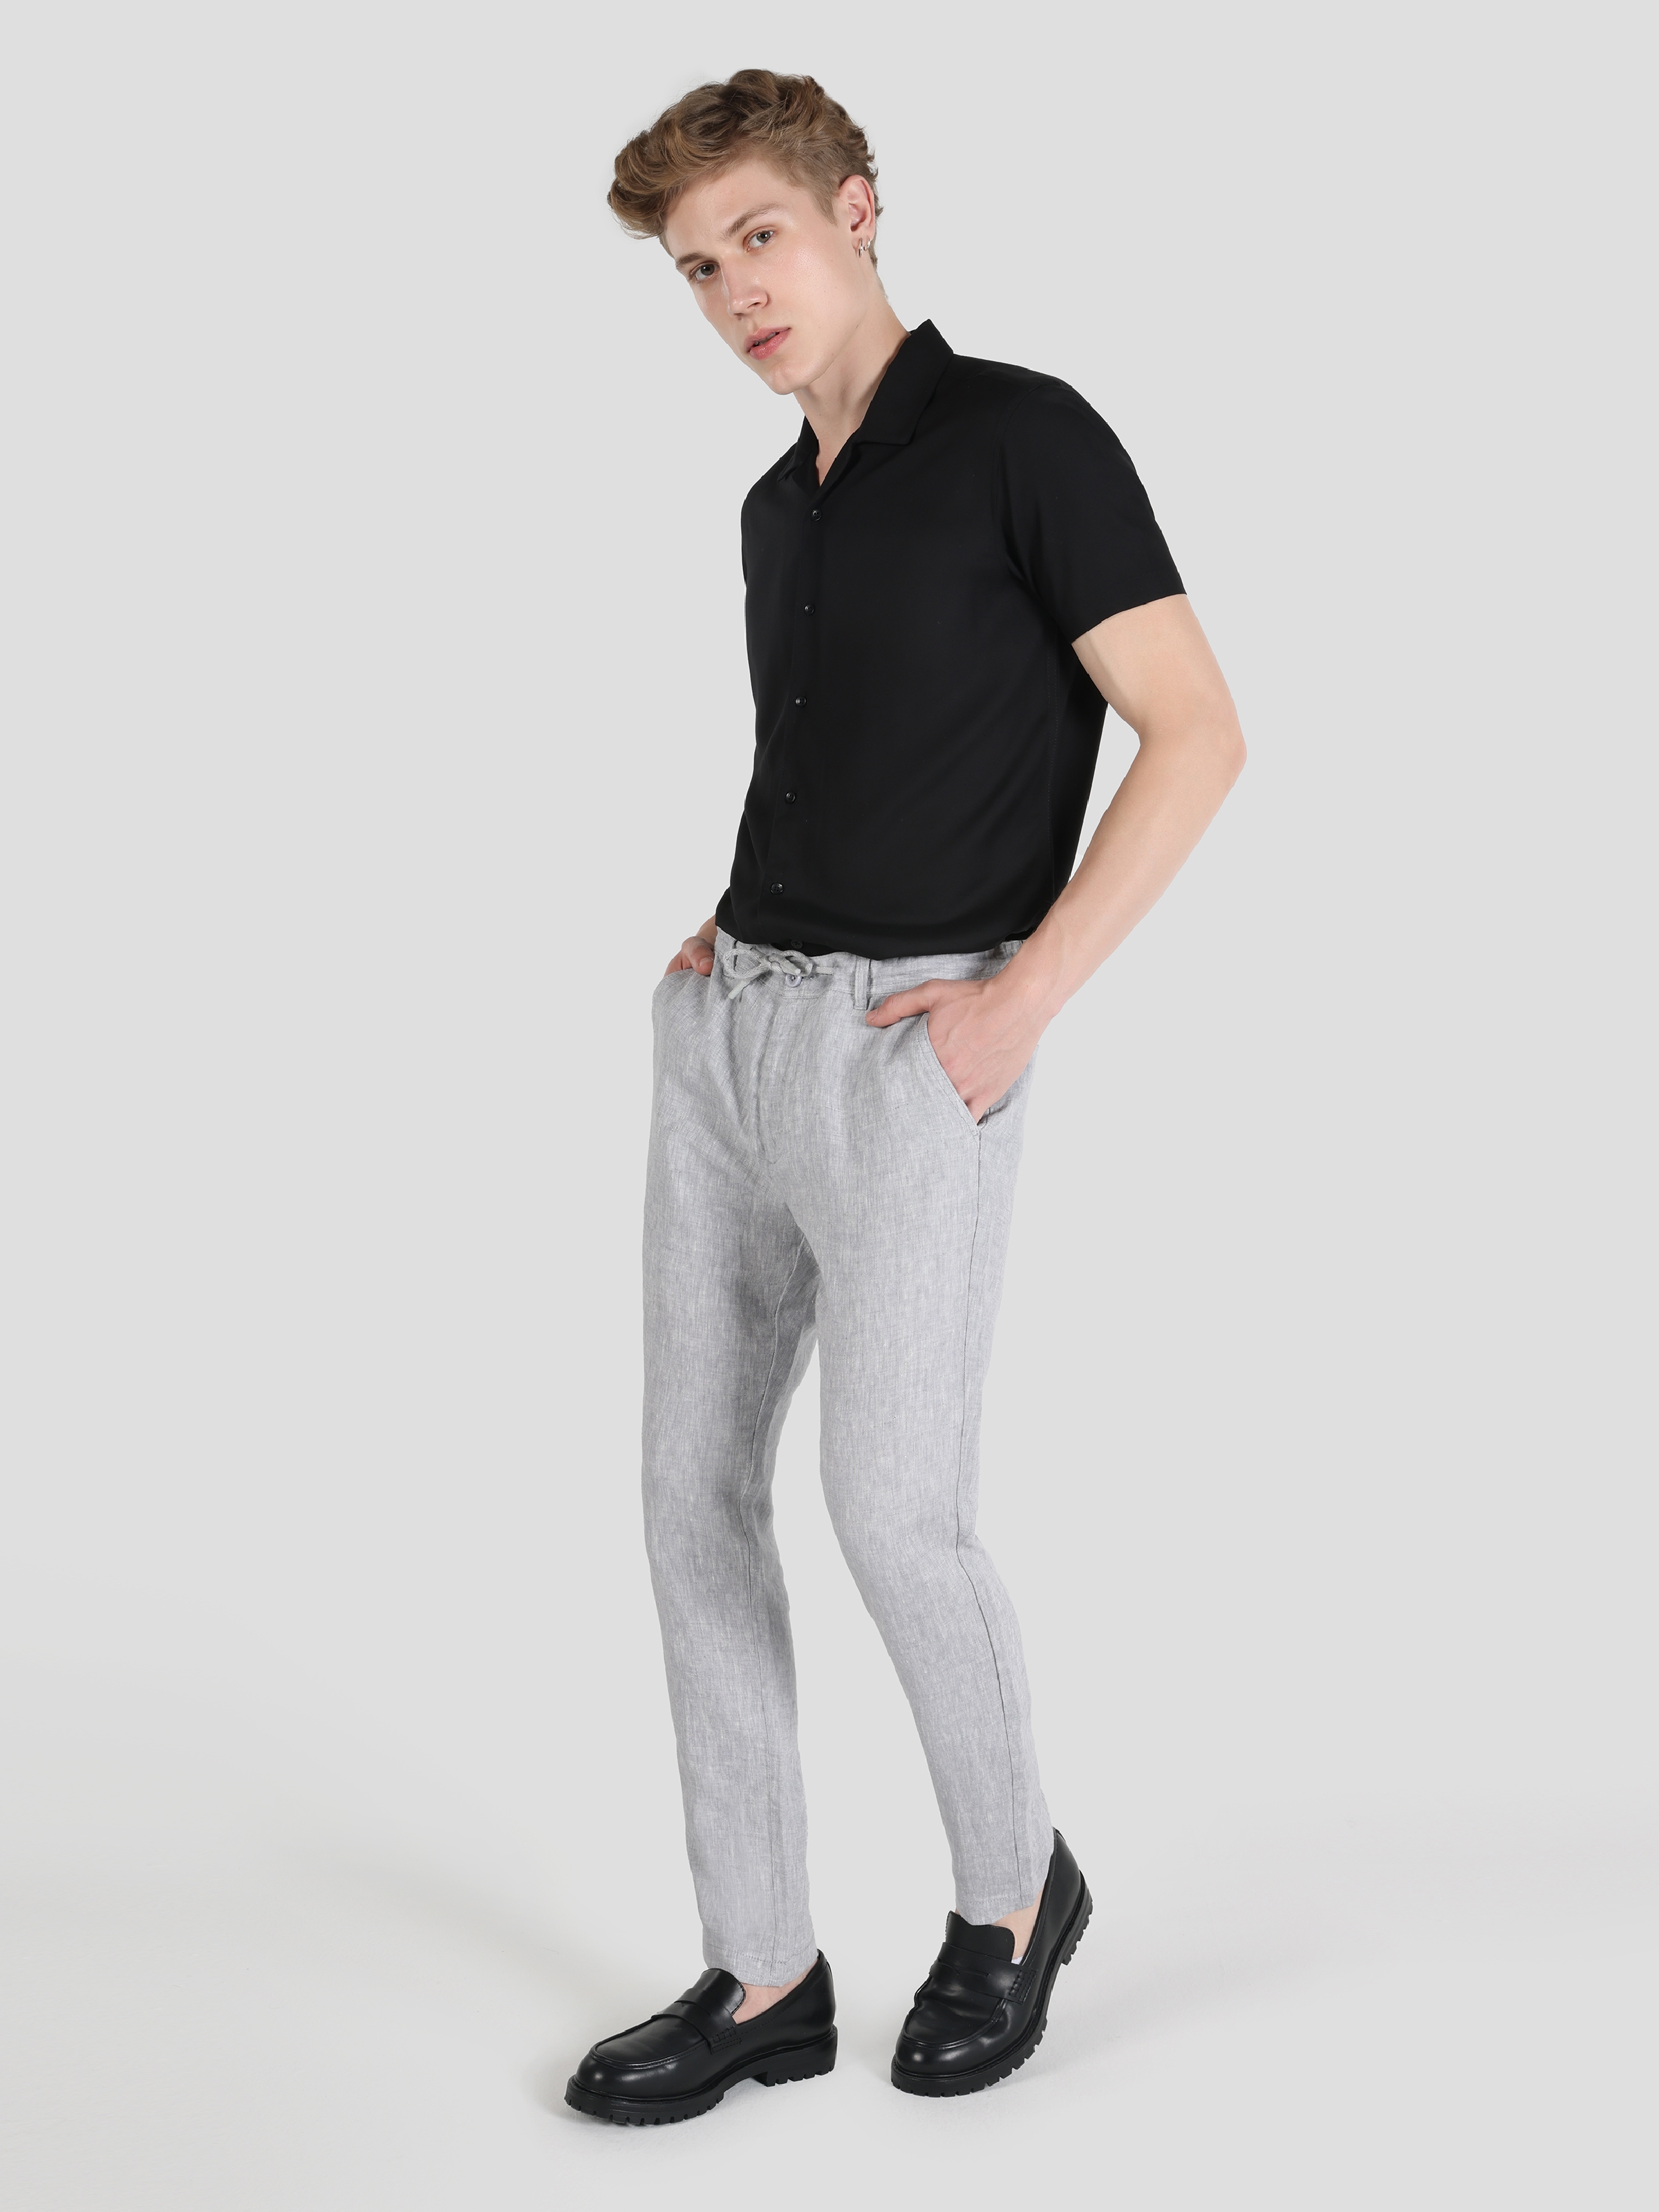 Afficher les détails de Pantalon Homme Gris Coupe Droite Taille Moyenne Coupe Regular